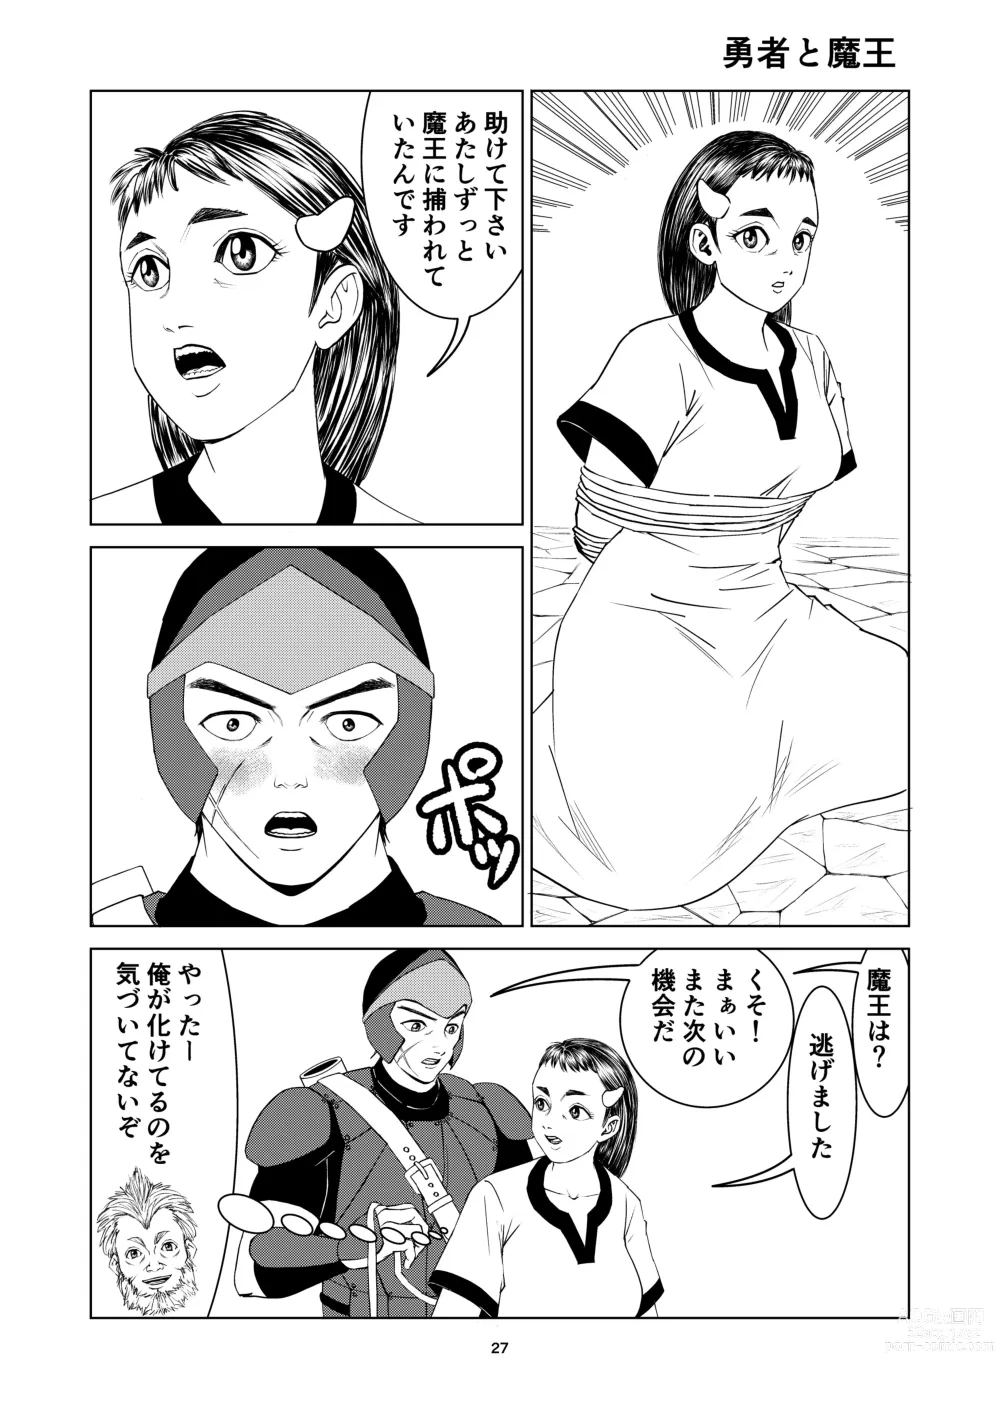 Page 27 of doujinshi Yutakadou short story collection 2